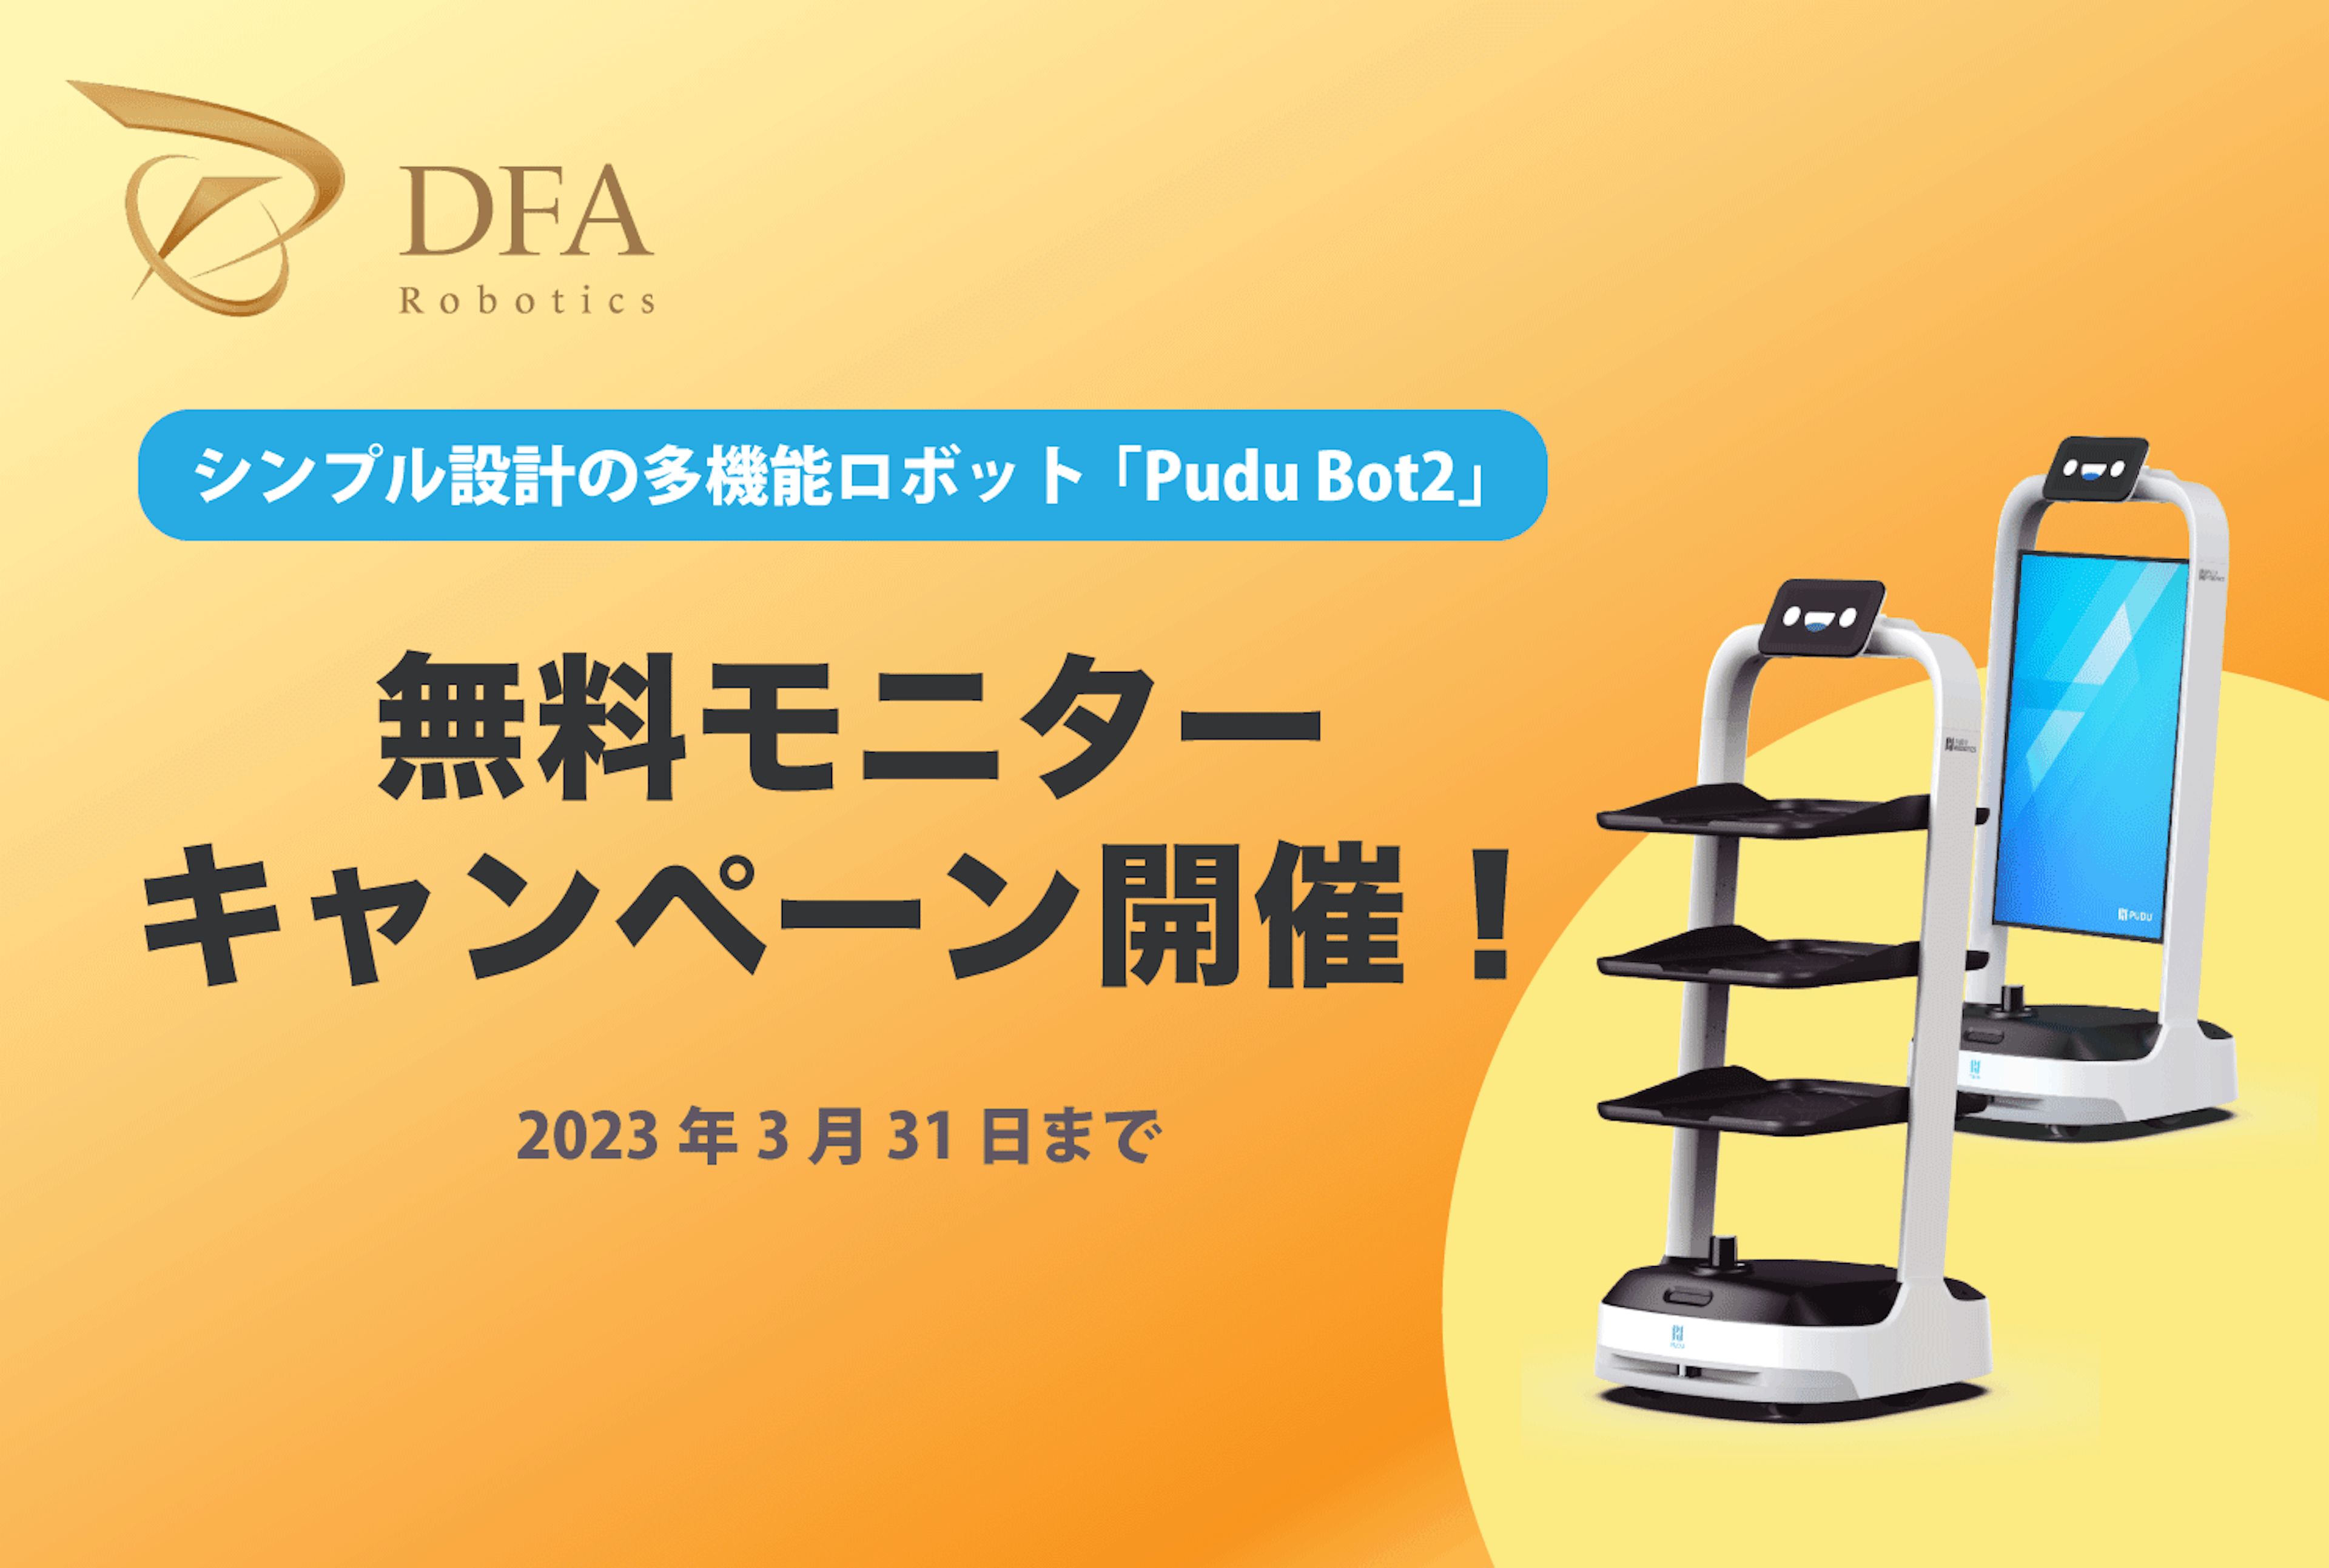 シンプル設計の多機能ロボット「Pudu Bot２（プードゥーボットツー）」の取り扱いがスタート、テスト導入の無料モニターキャンペーン開催